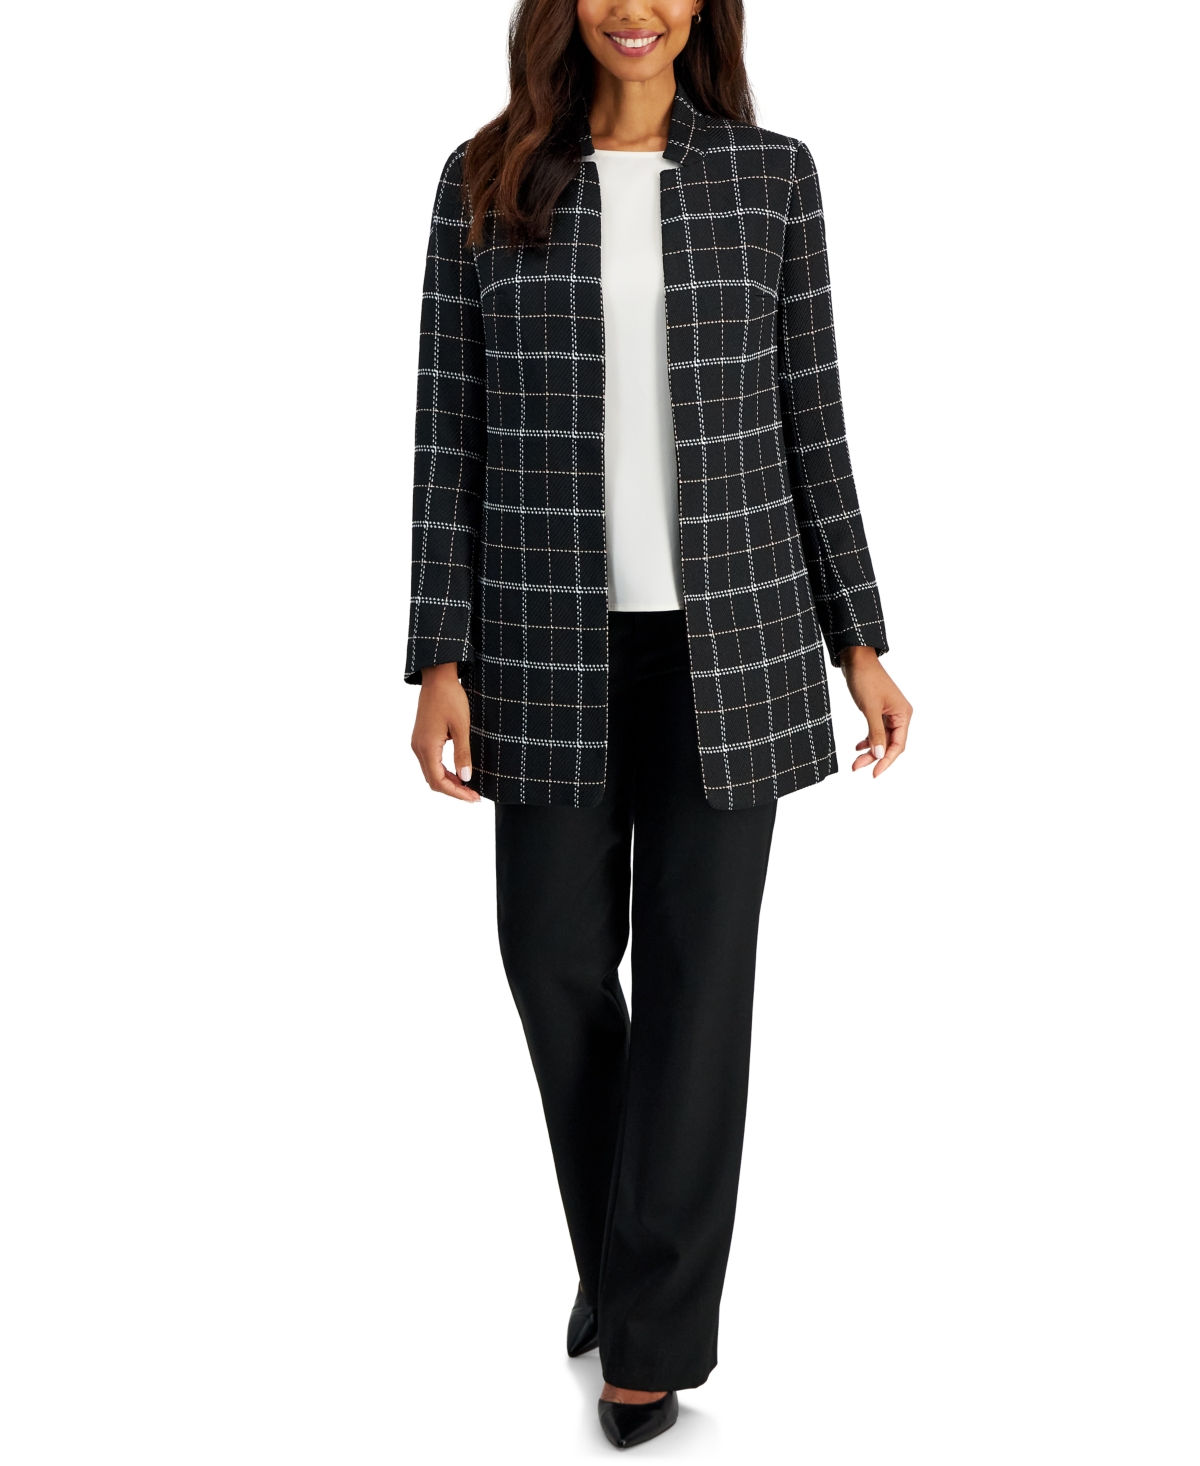 Kasper Women's Star-collar Windowpane-pattern Open-front Jacket In Black Multi